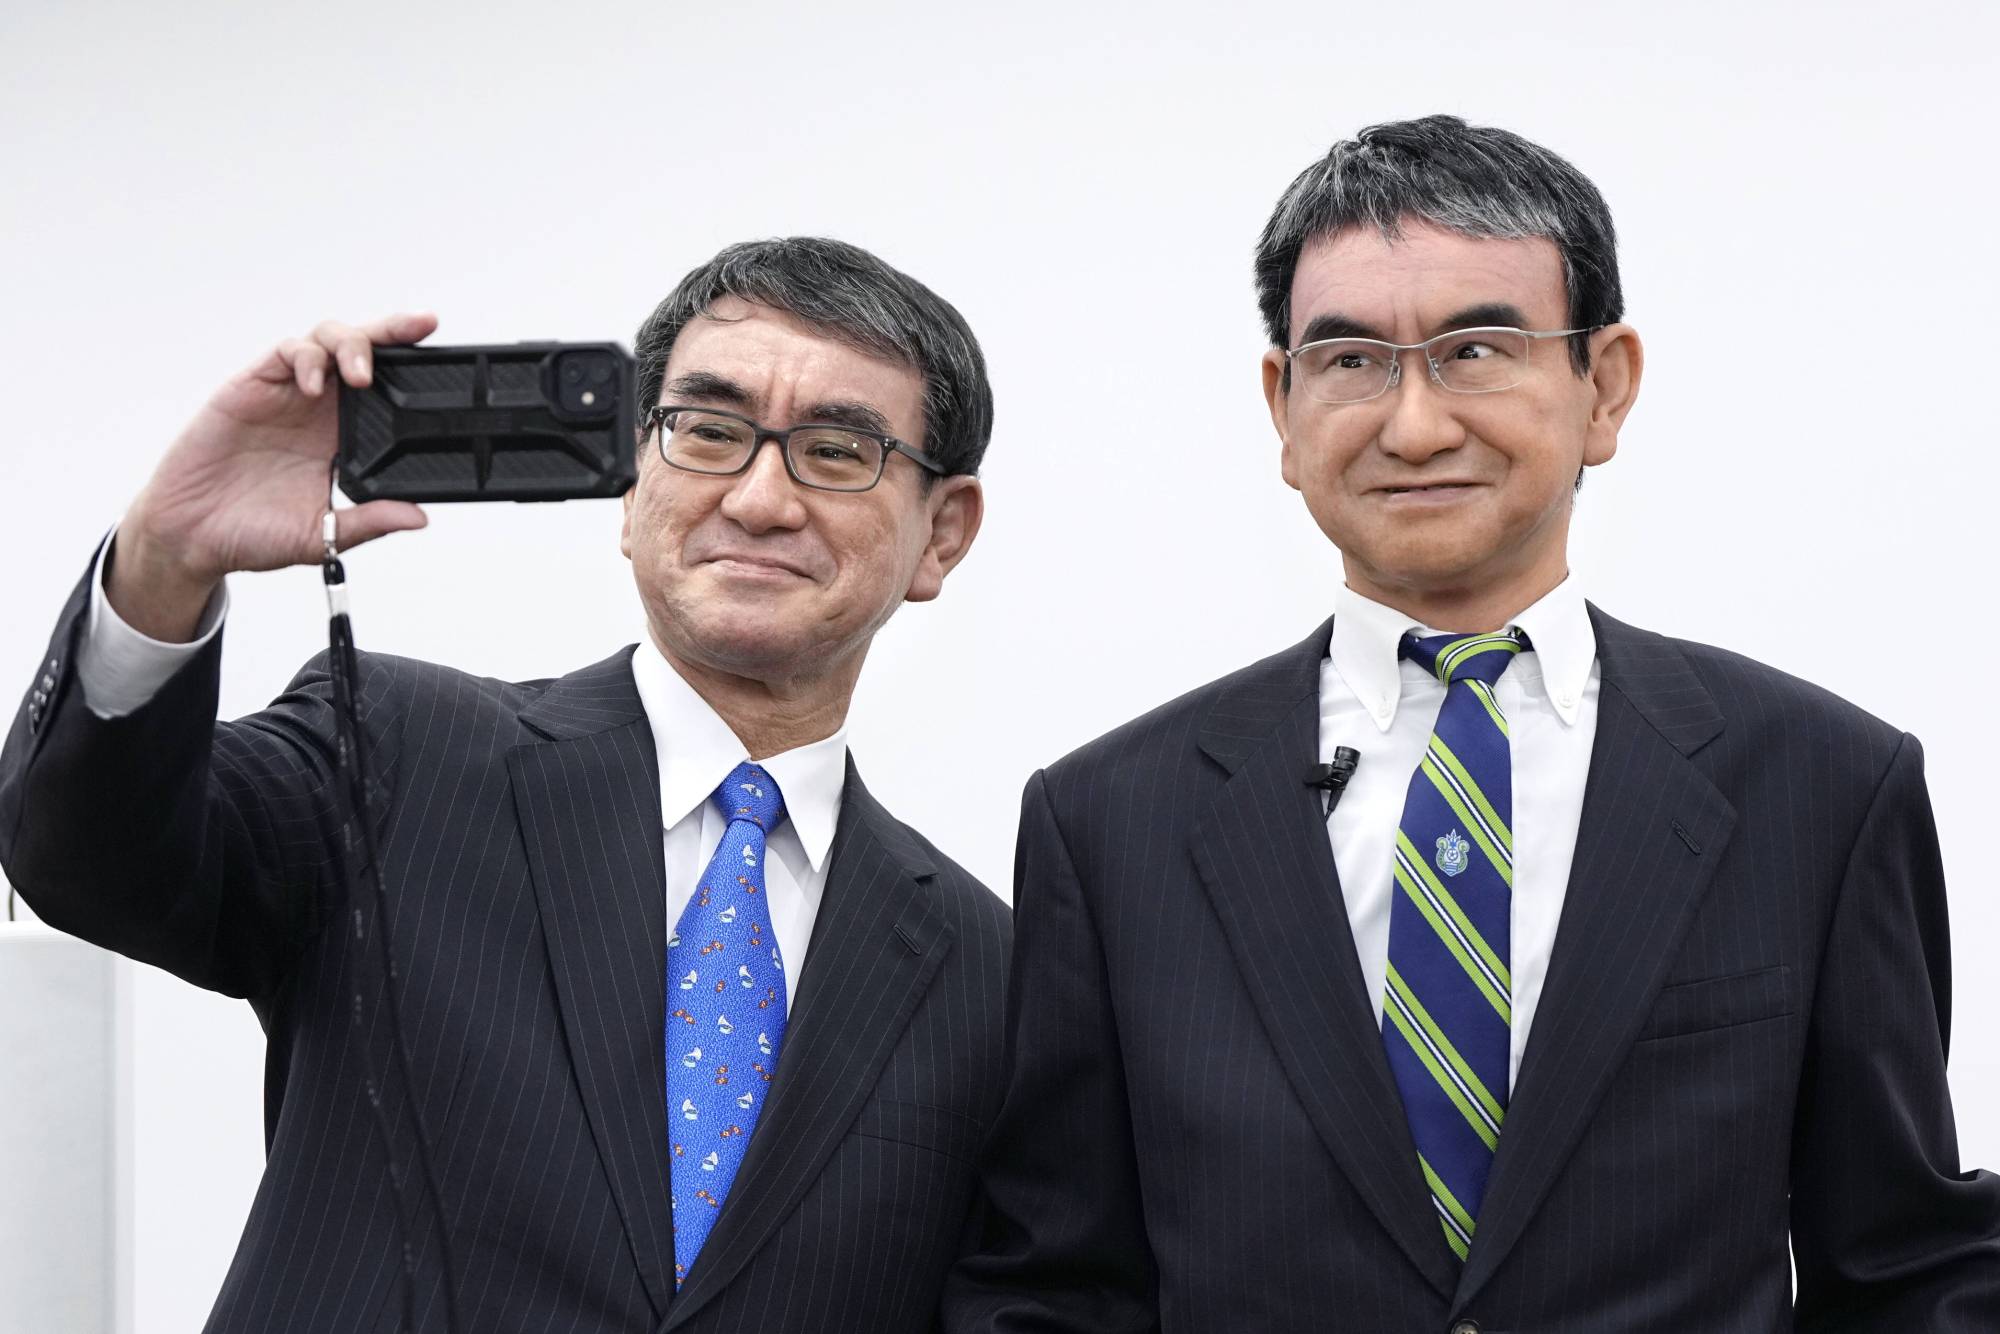 В Японії створили цифрового клона міністра - він розумніший і розвиненіший за реальну людину